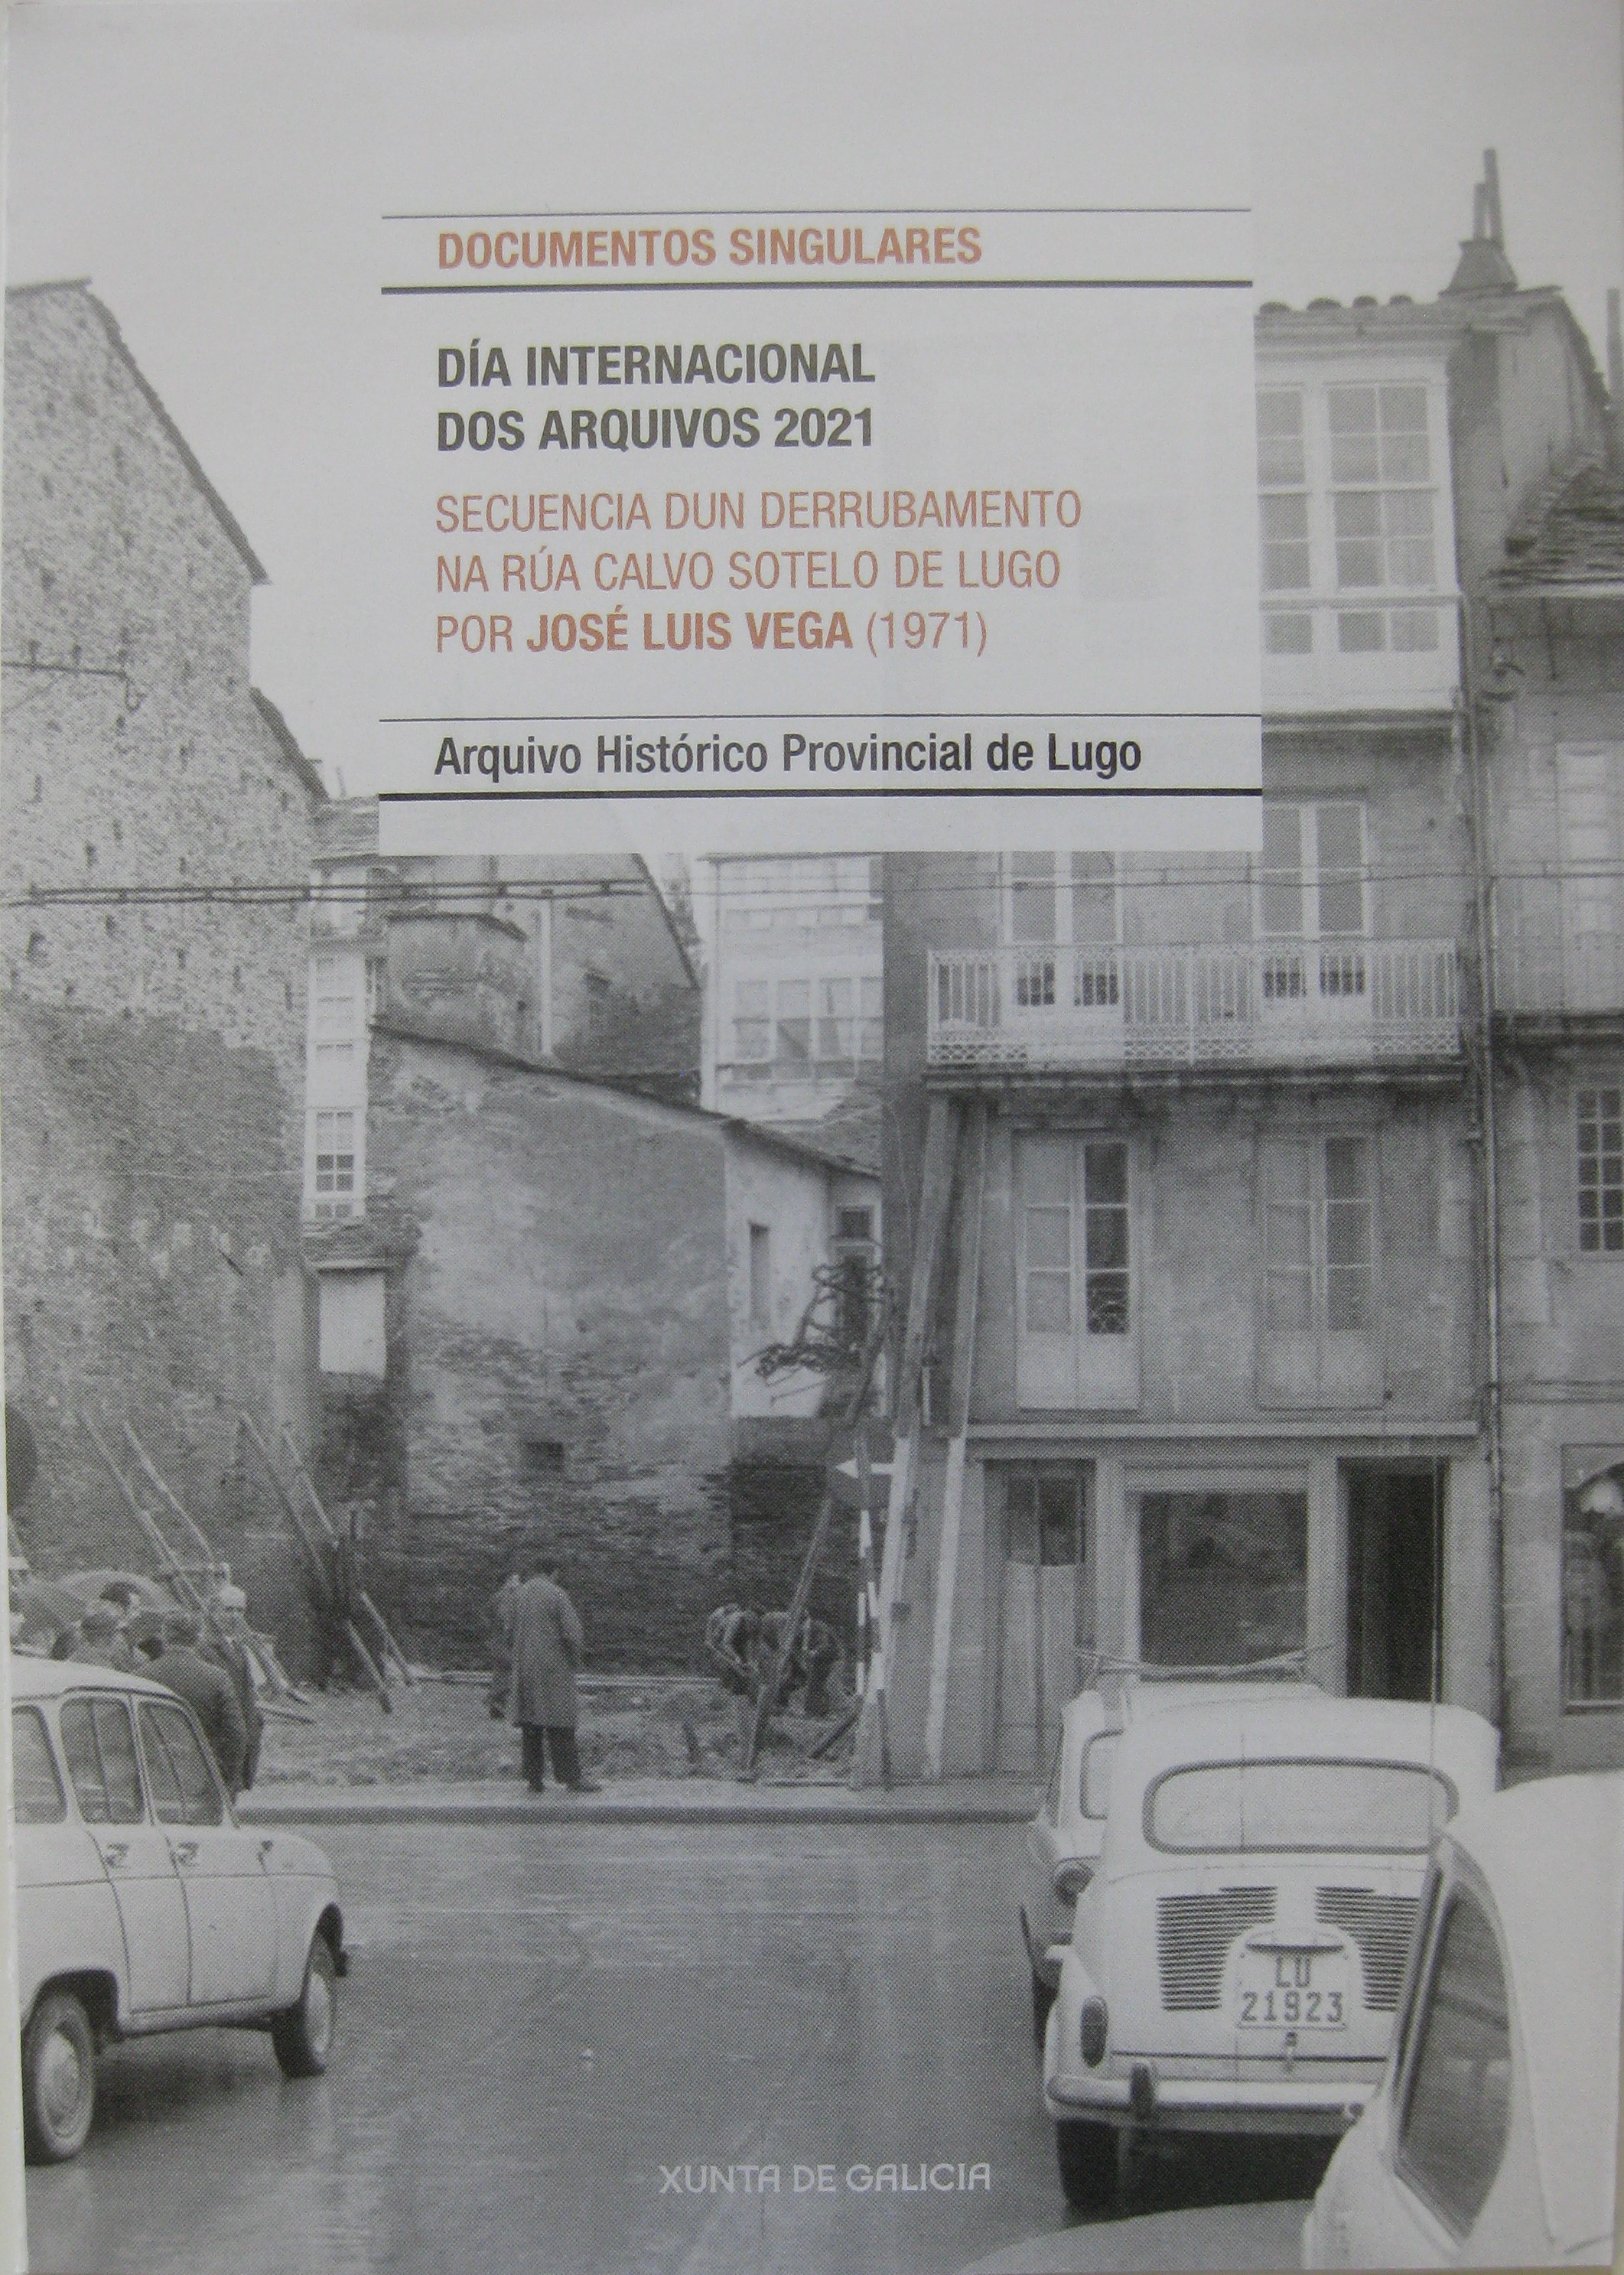 Secuencia dun derrubamento na rúa Calvo sotelo de Lugo, 1971. José Luis Vega